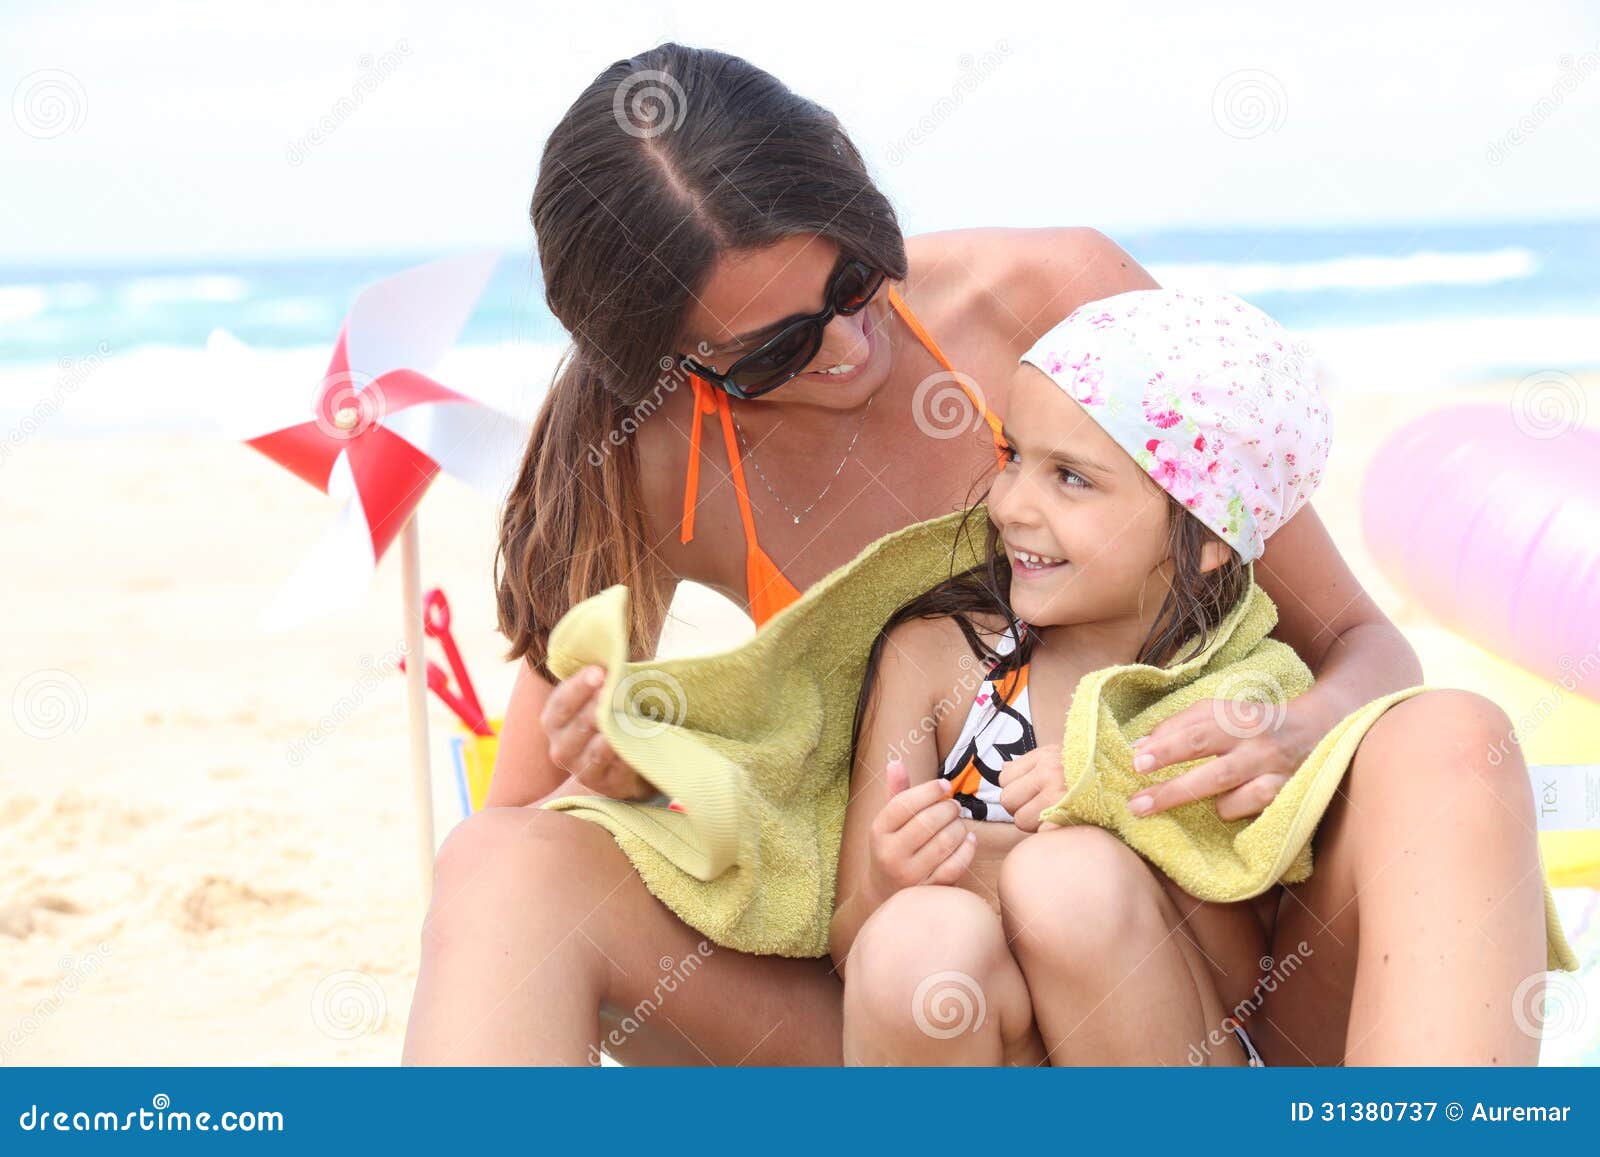 Трусы мама с дочкой. Дочь на пляже. Мама с дочкой загорают. Мама сдоякой на пляже. Ама с дочерьми на пляже.